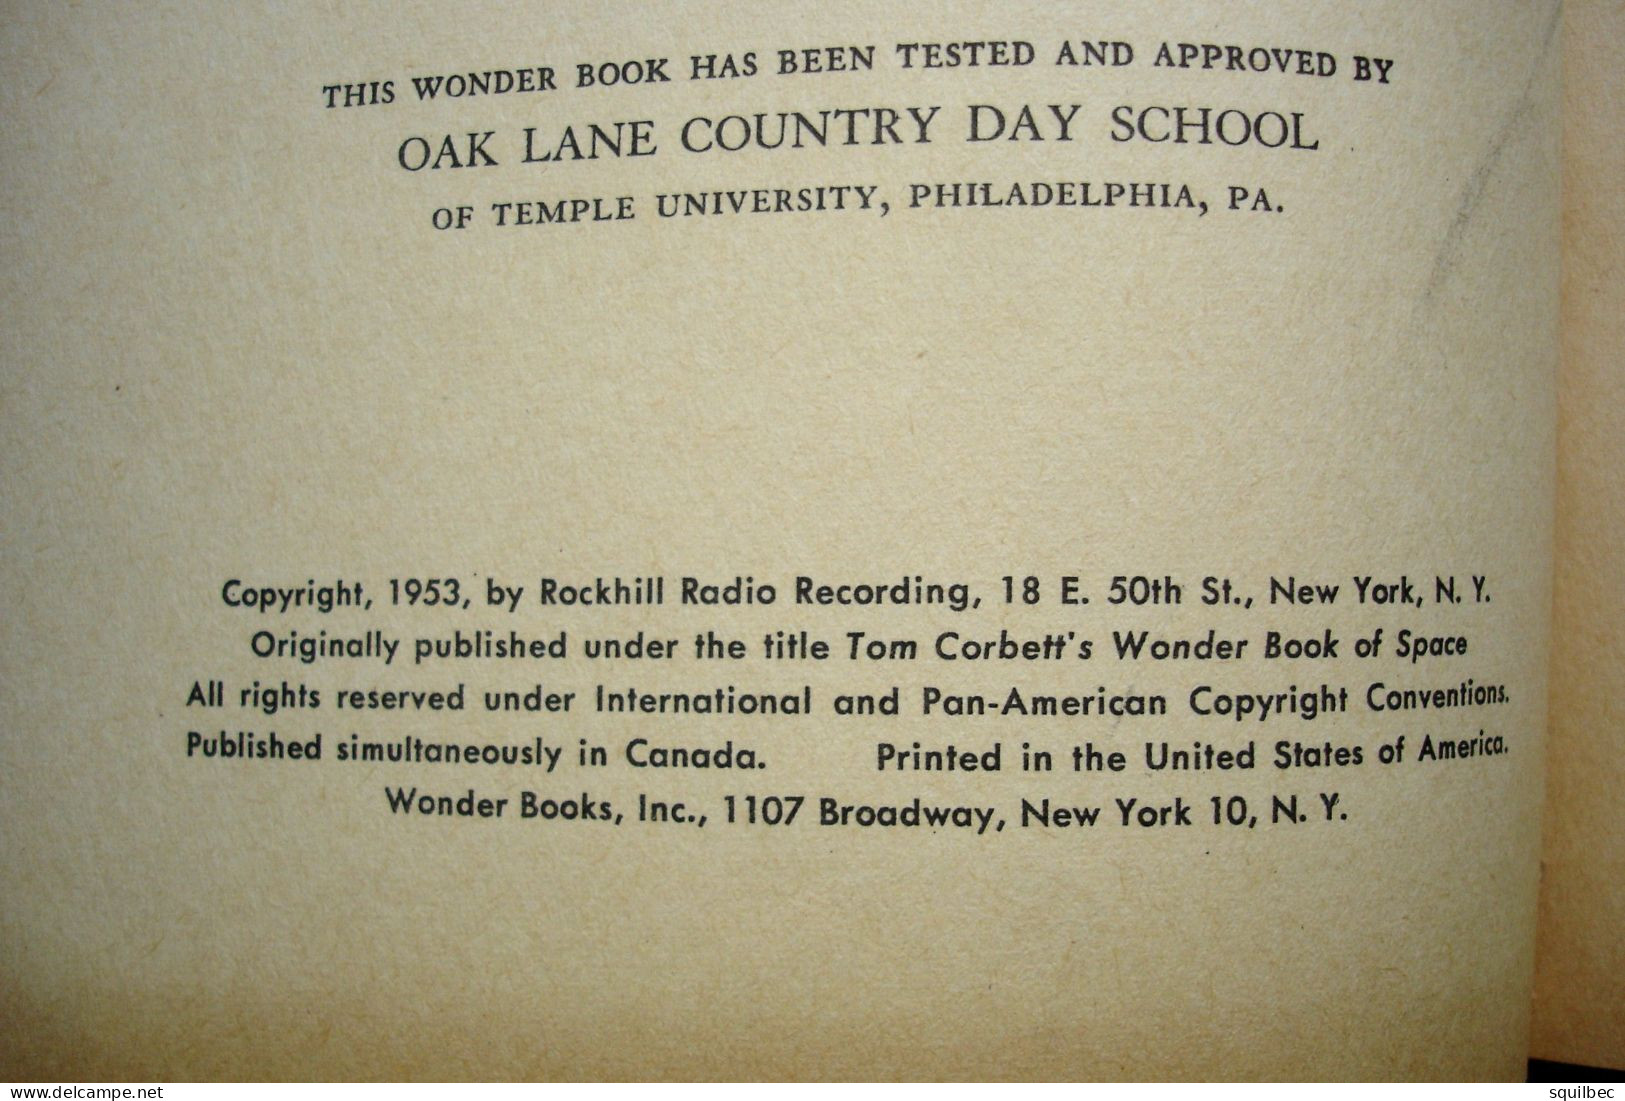 Tom Corbett: A Trip To The Moon Marcia Martin Edité Par Wonder Books, New York, 1953 - Science Fiction - Livre D'enfant - Autres Éditeurs